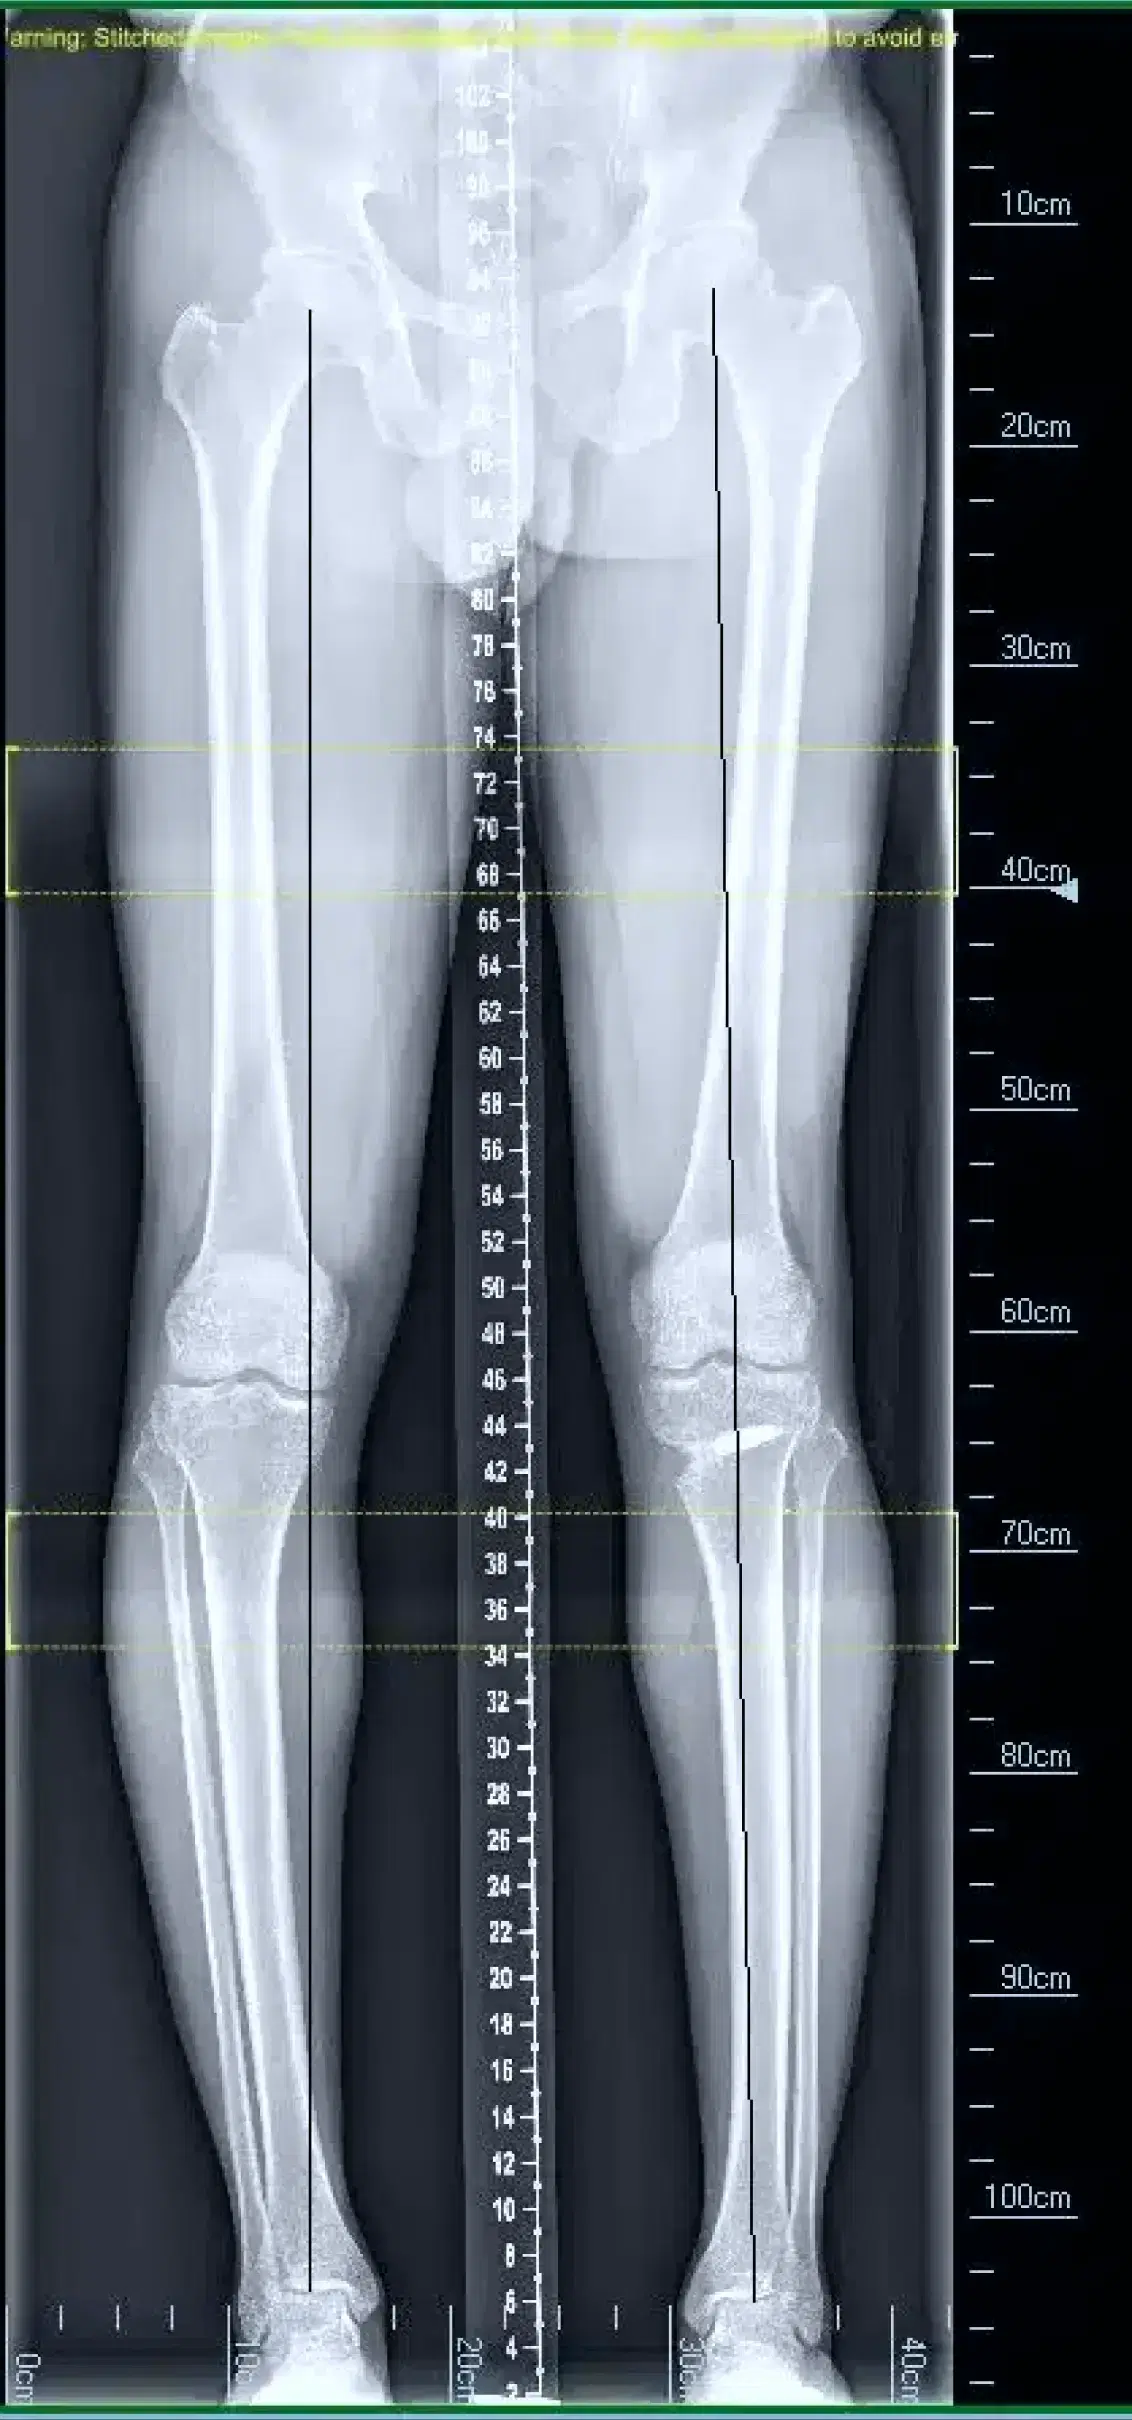 4foot x-ray